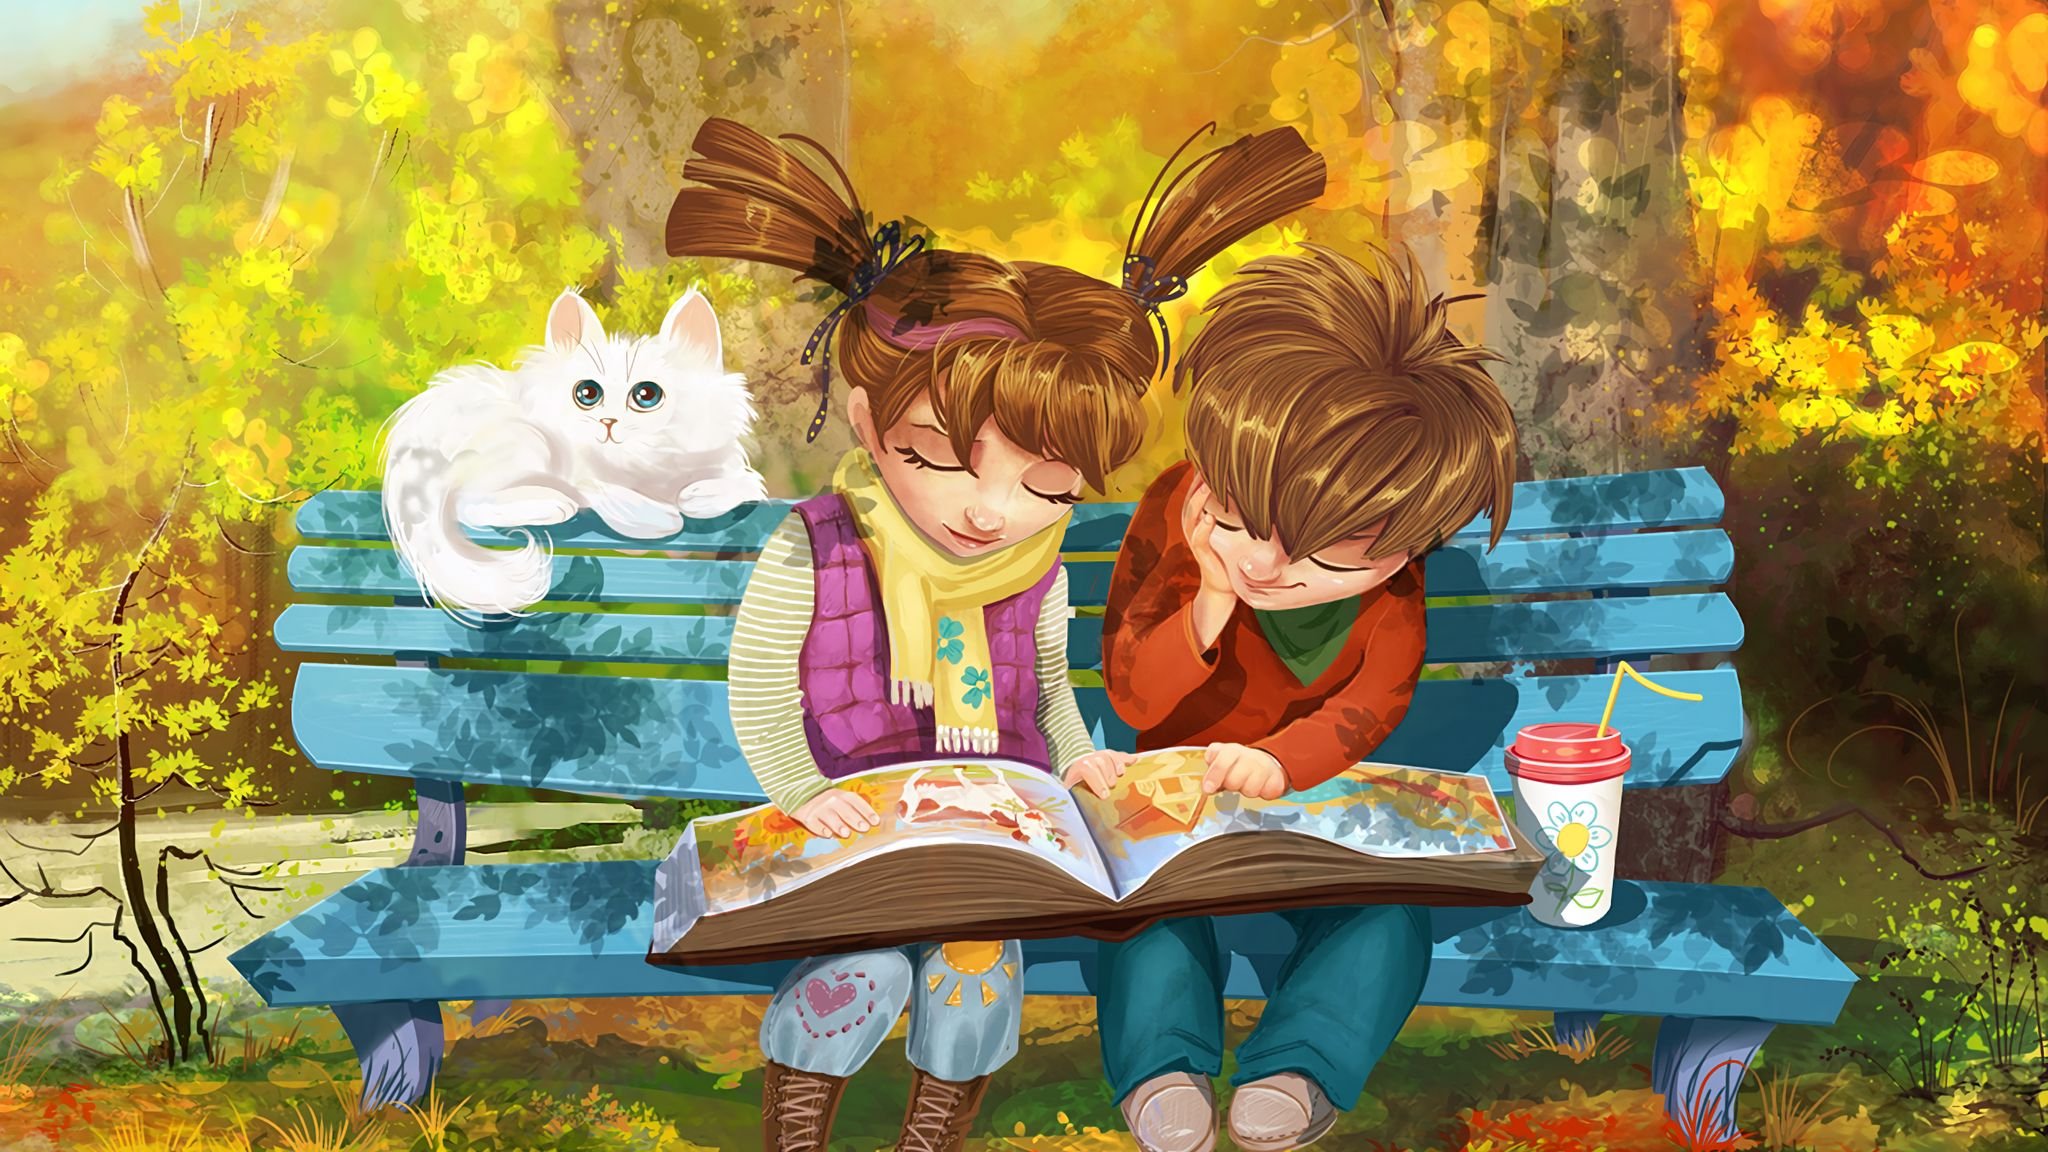 Читатель вдруг. Пойман за чтением. Лето с книжкой на скамейке. Иллюстрации к книгам. Мальчик и девочка на скамейке.